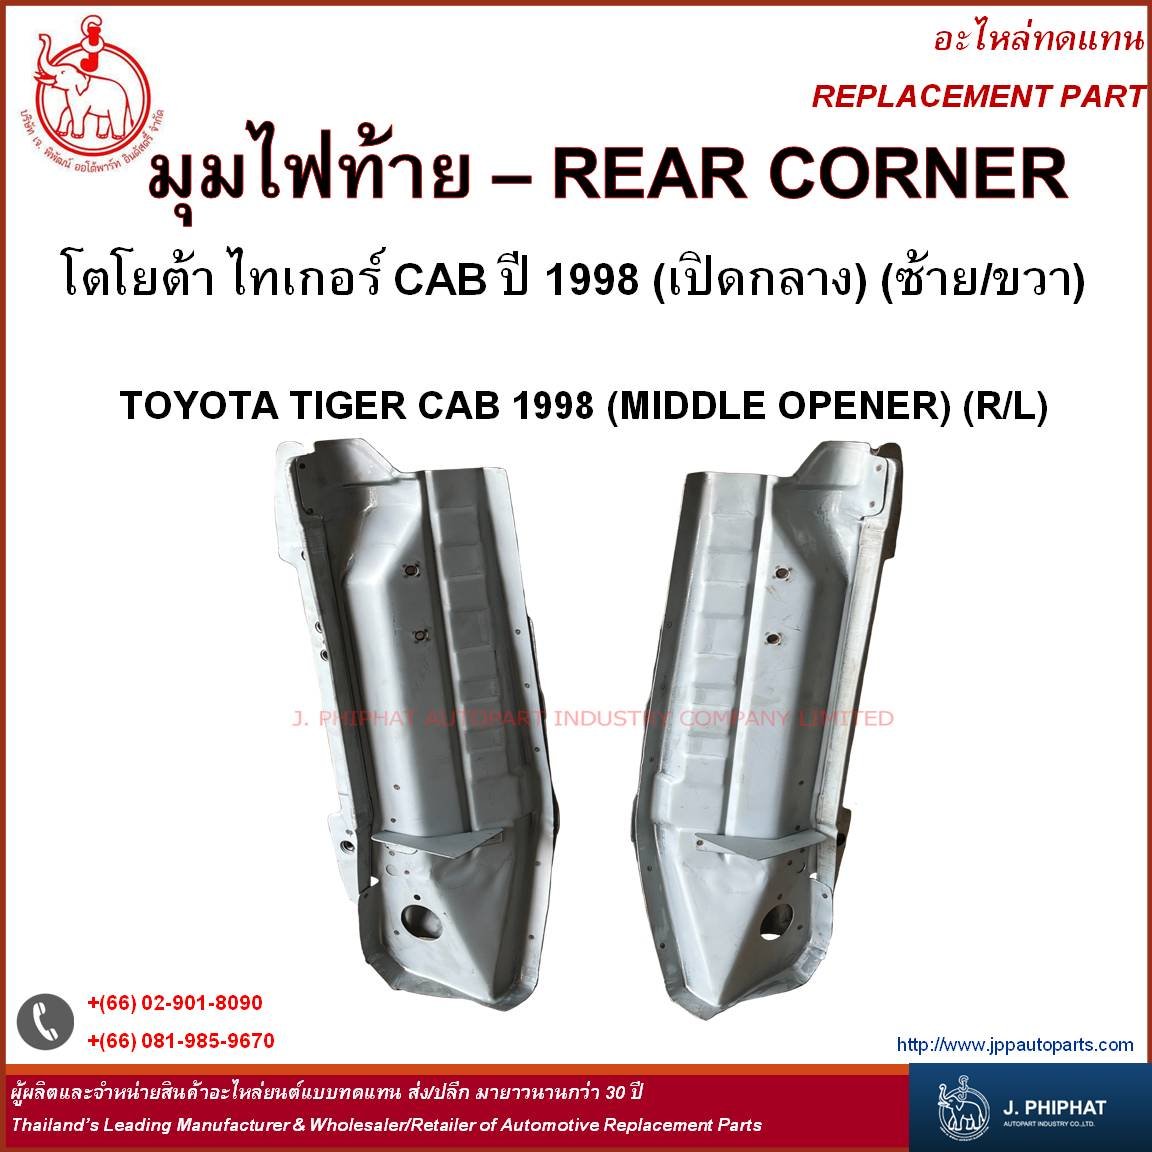 Rear Corner - TOYOTA TIGER CAB '1998 (MIDDLE OPENER) (R/L)